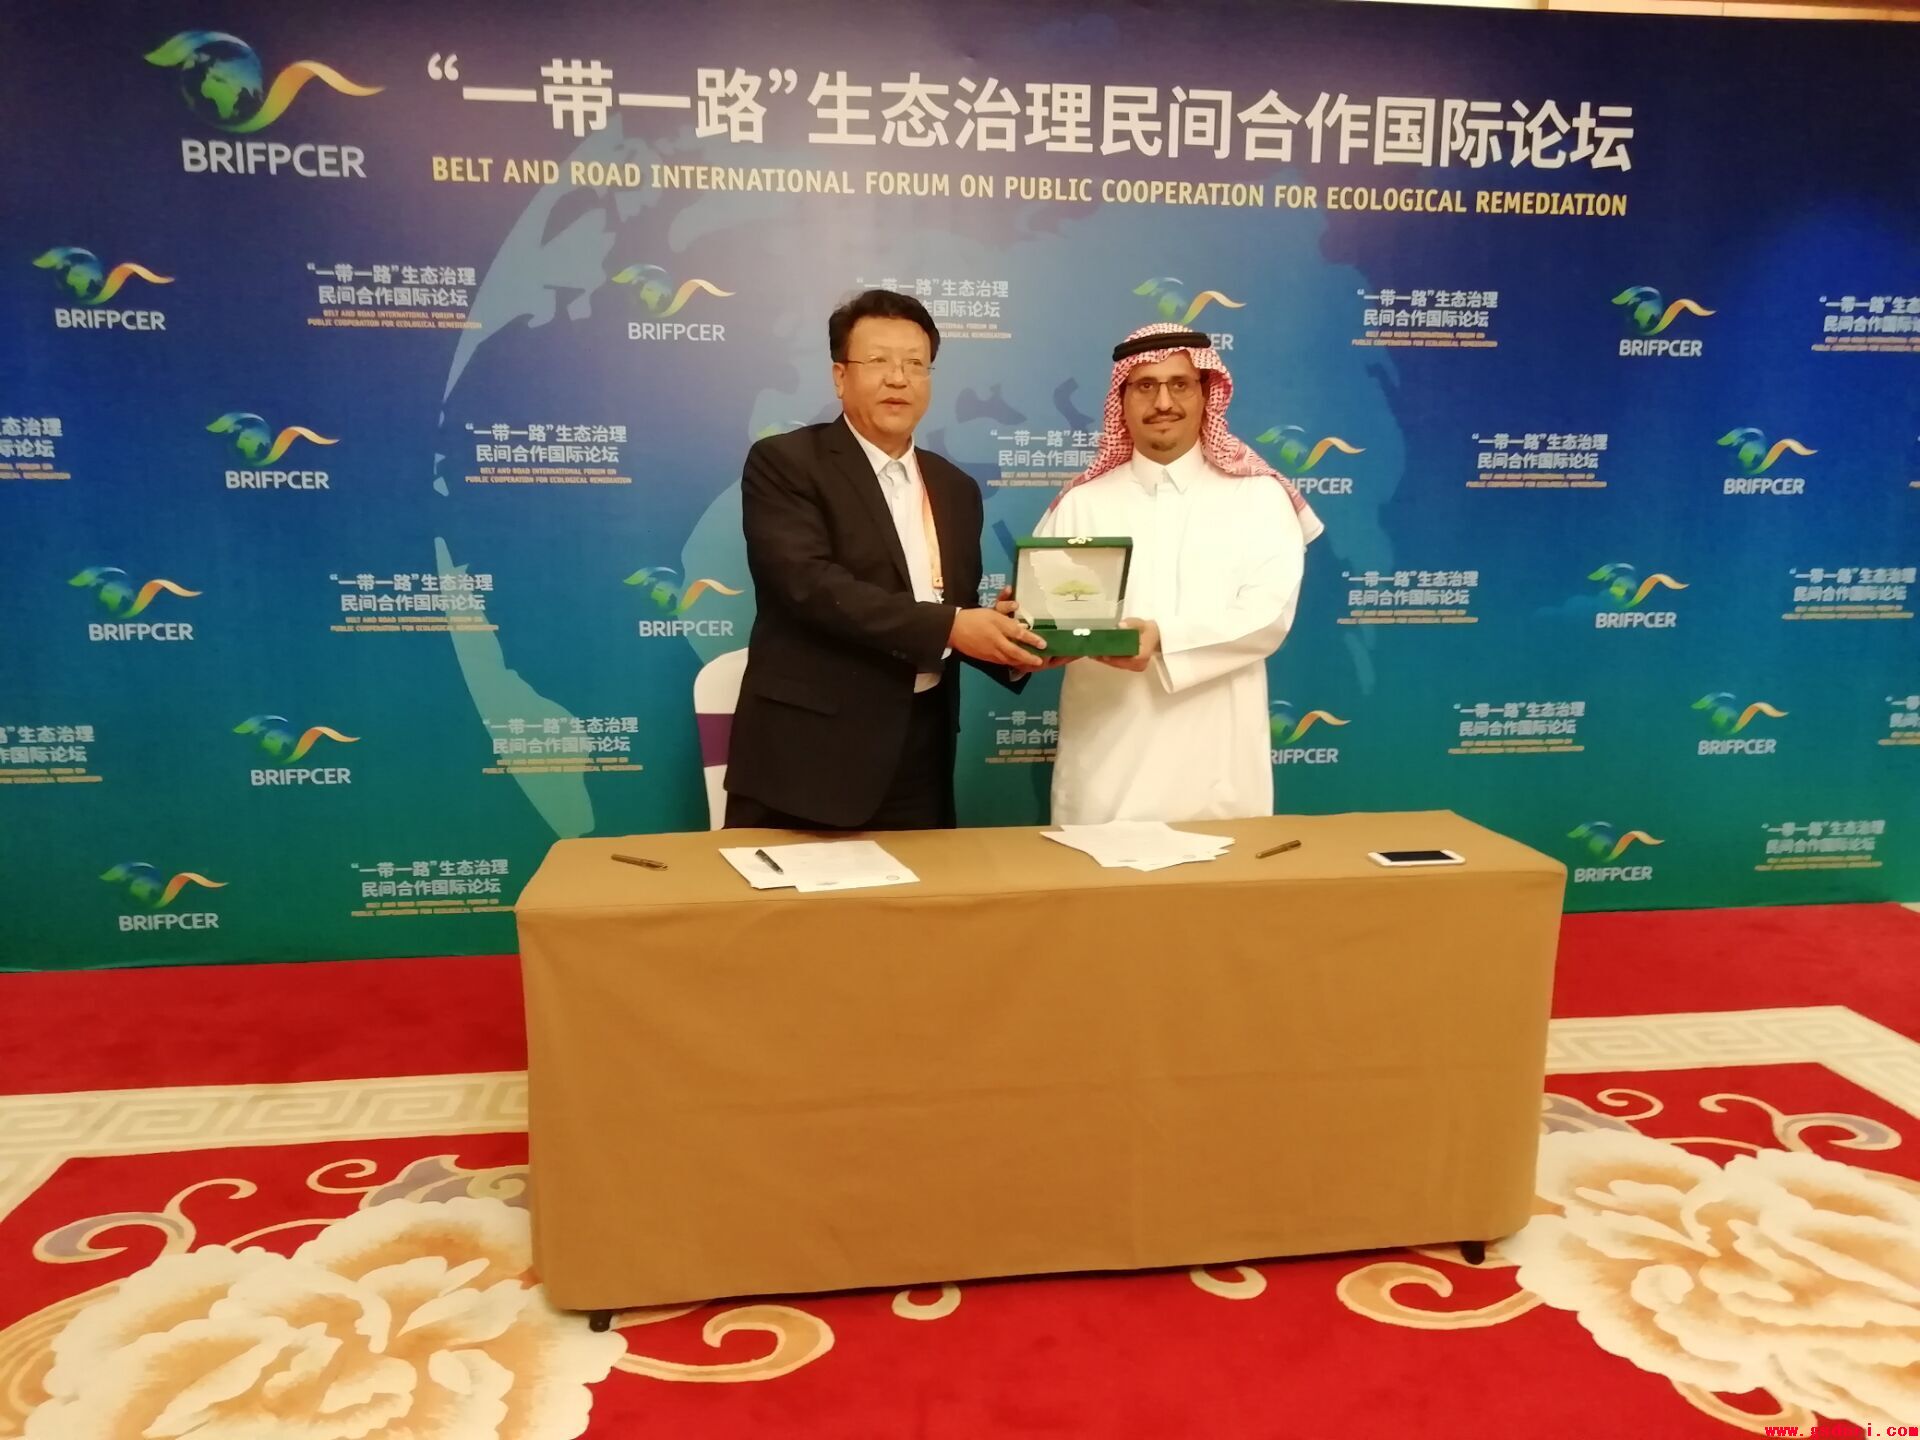 甘肃省治沙研究所与沙特阿拉伯王国辣木属及沙生植物应用协会签订合作备忘录